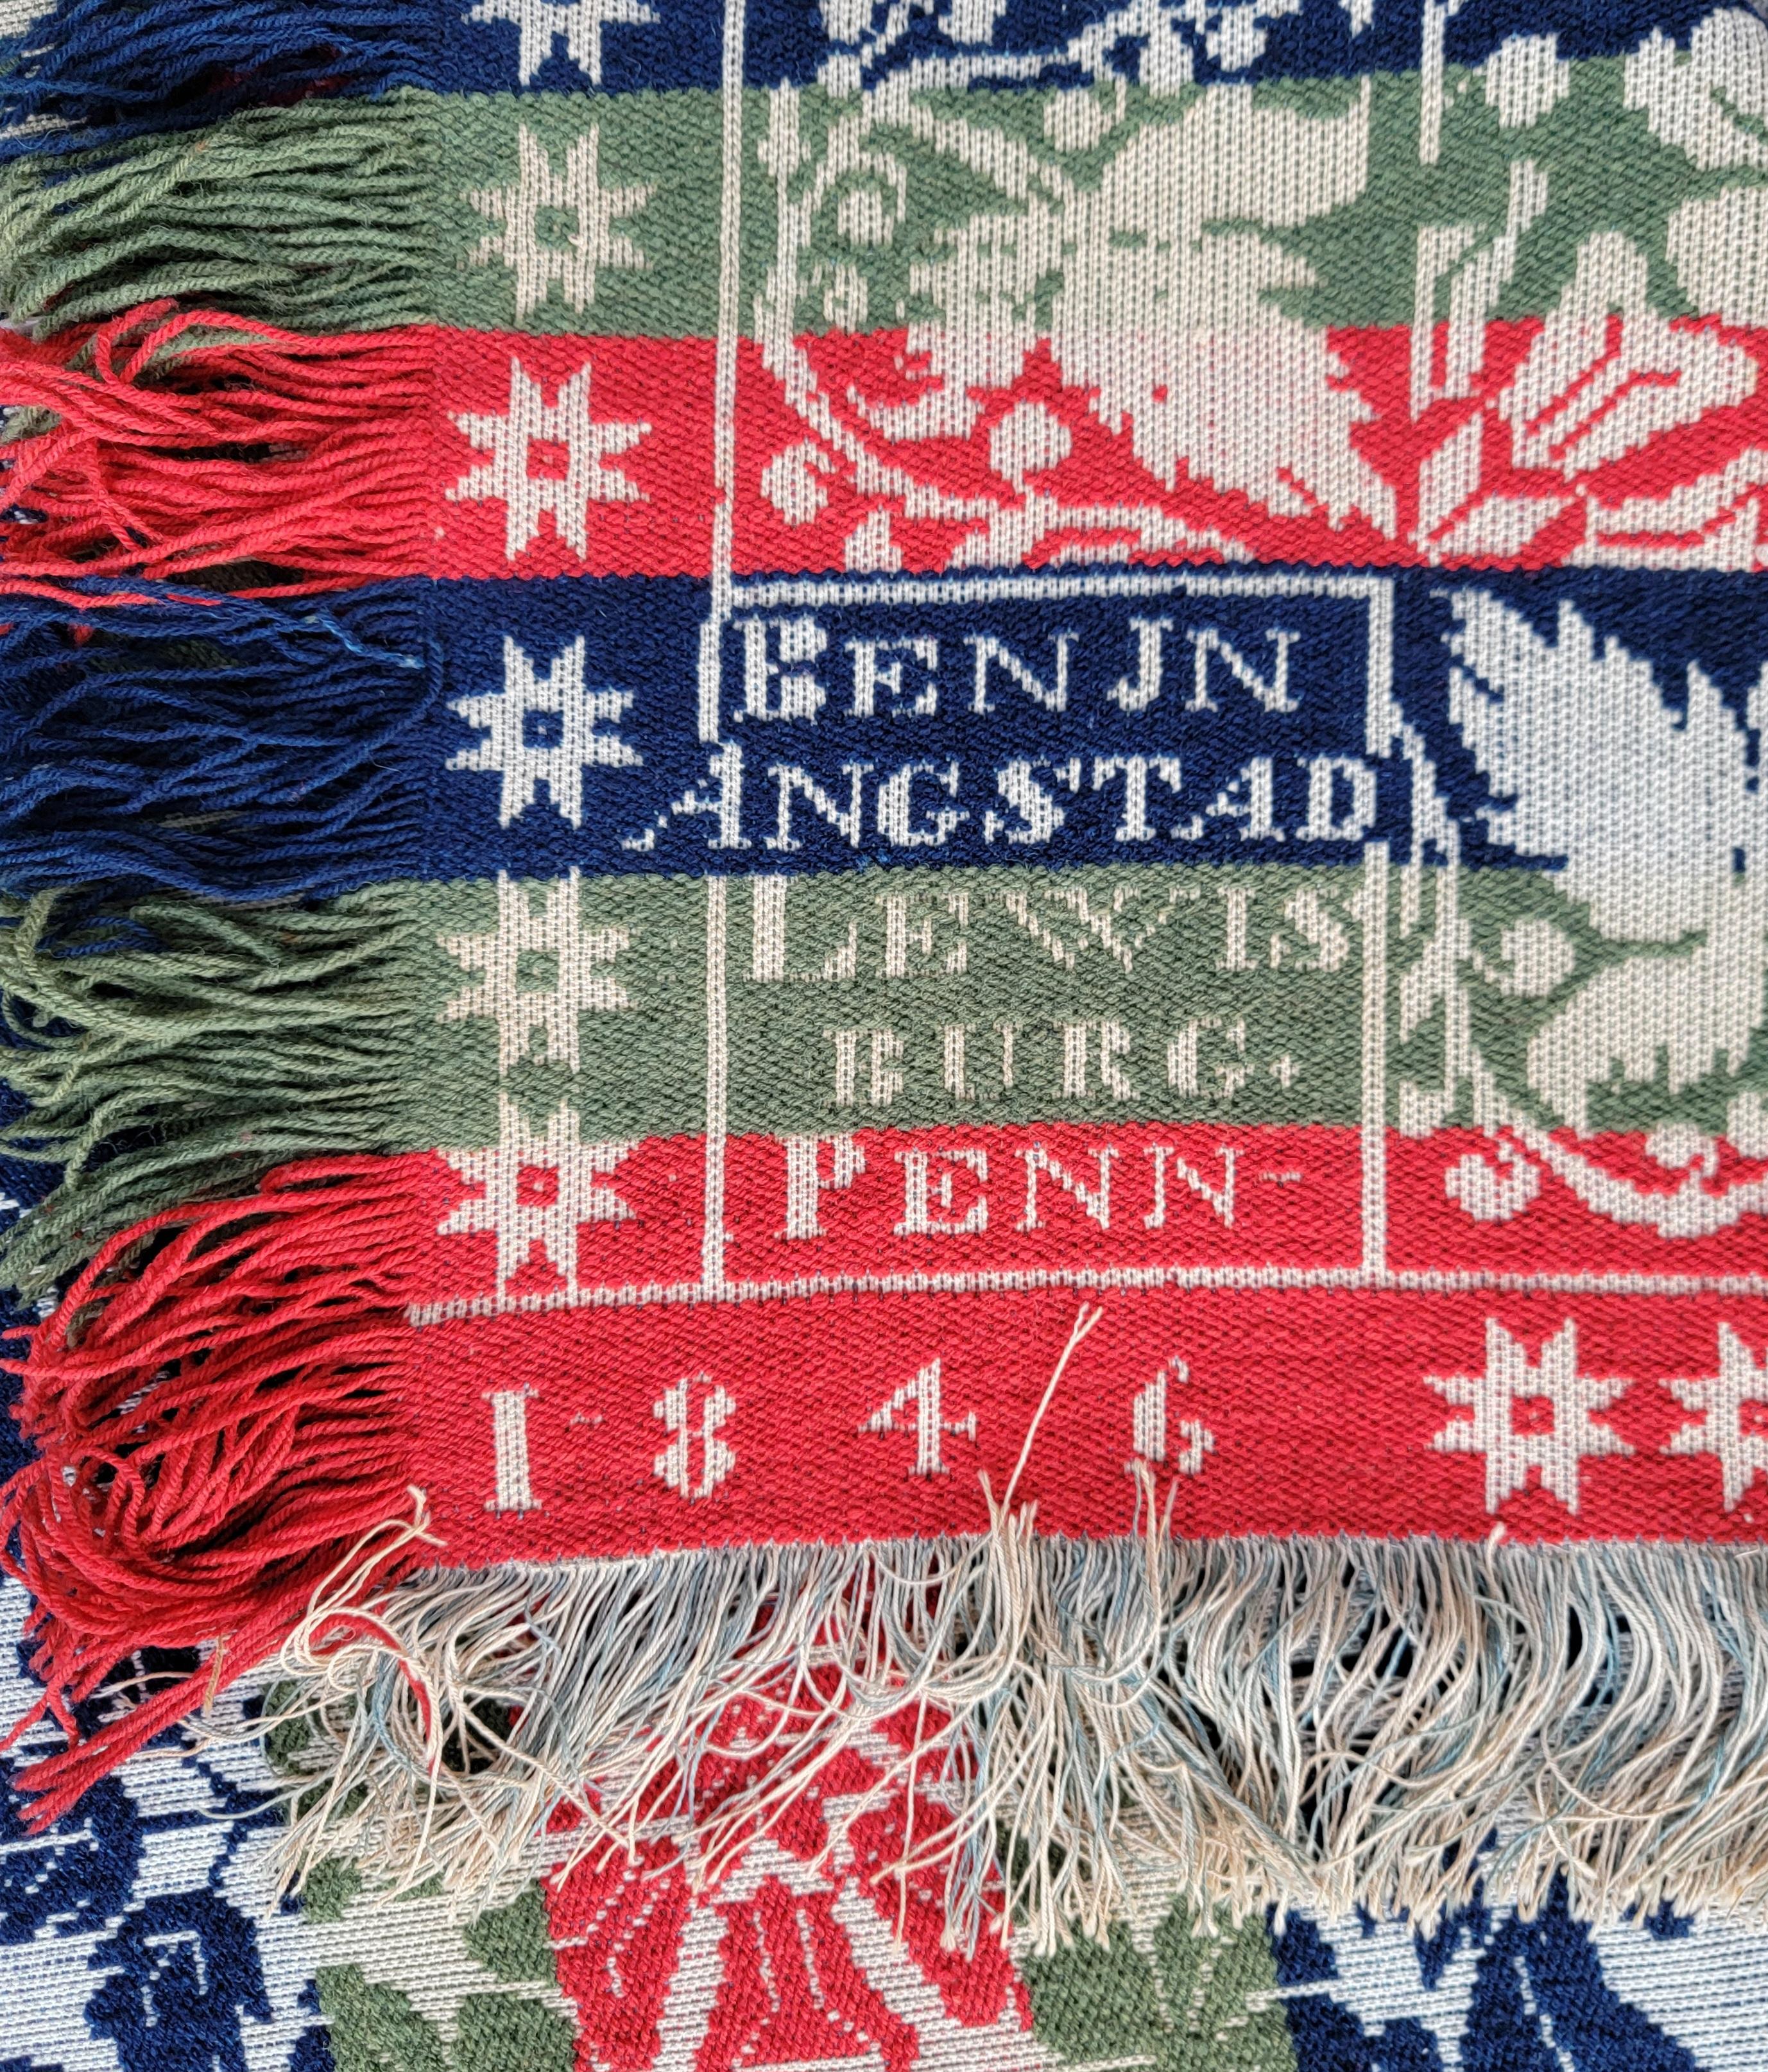 Unterzeichnet BenJn Angstad, Lewisburg Penn 1846. Neuwertig gewebte Jacquarddecke mit tollen Fransen. Diese Decke ist die am besten erhaltene Lewisburg-Decke, die je gesehen wurde.